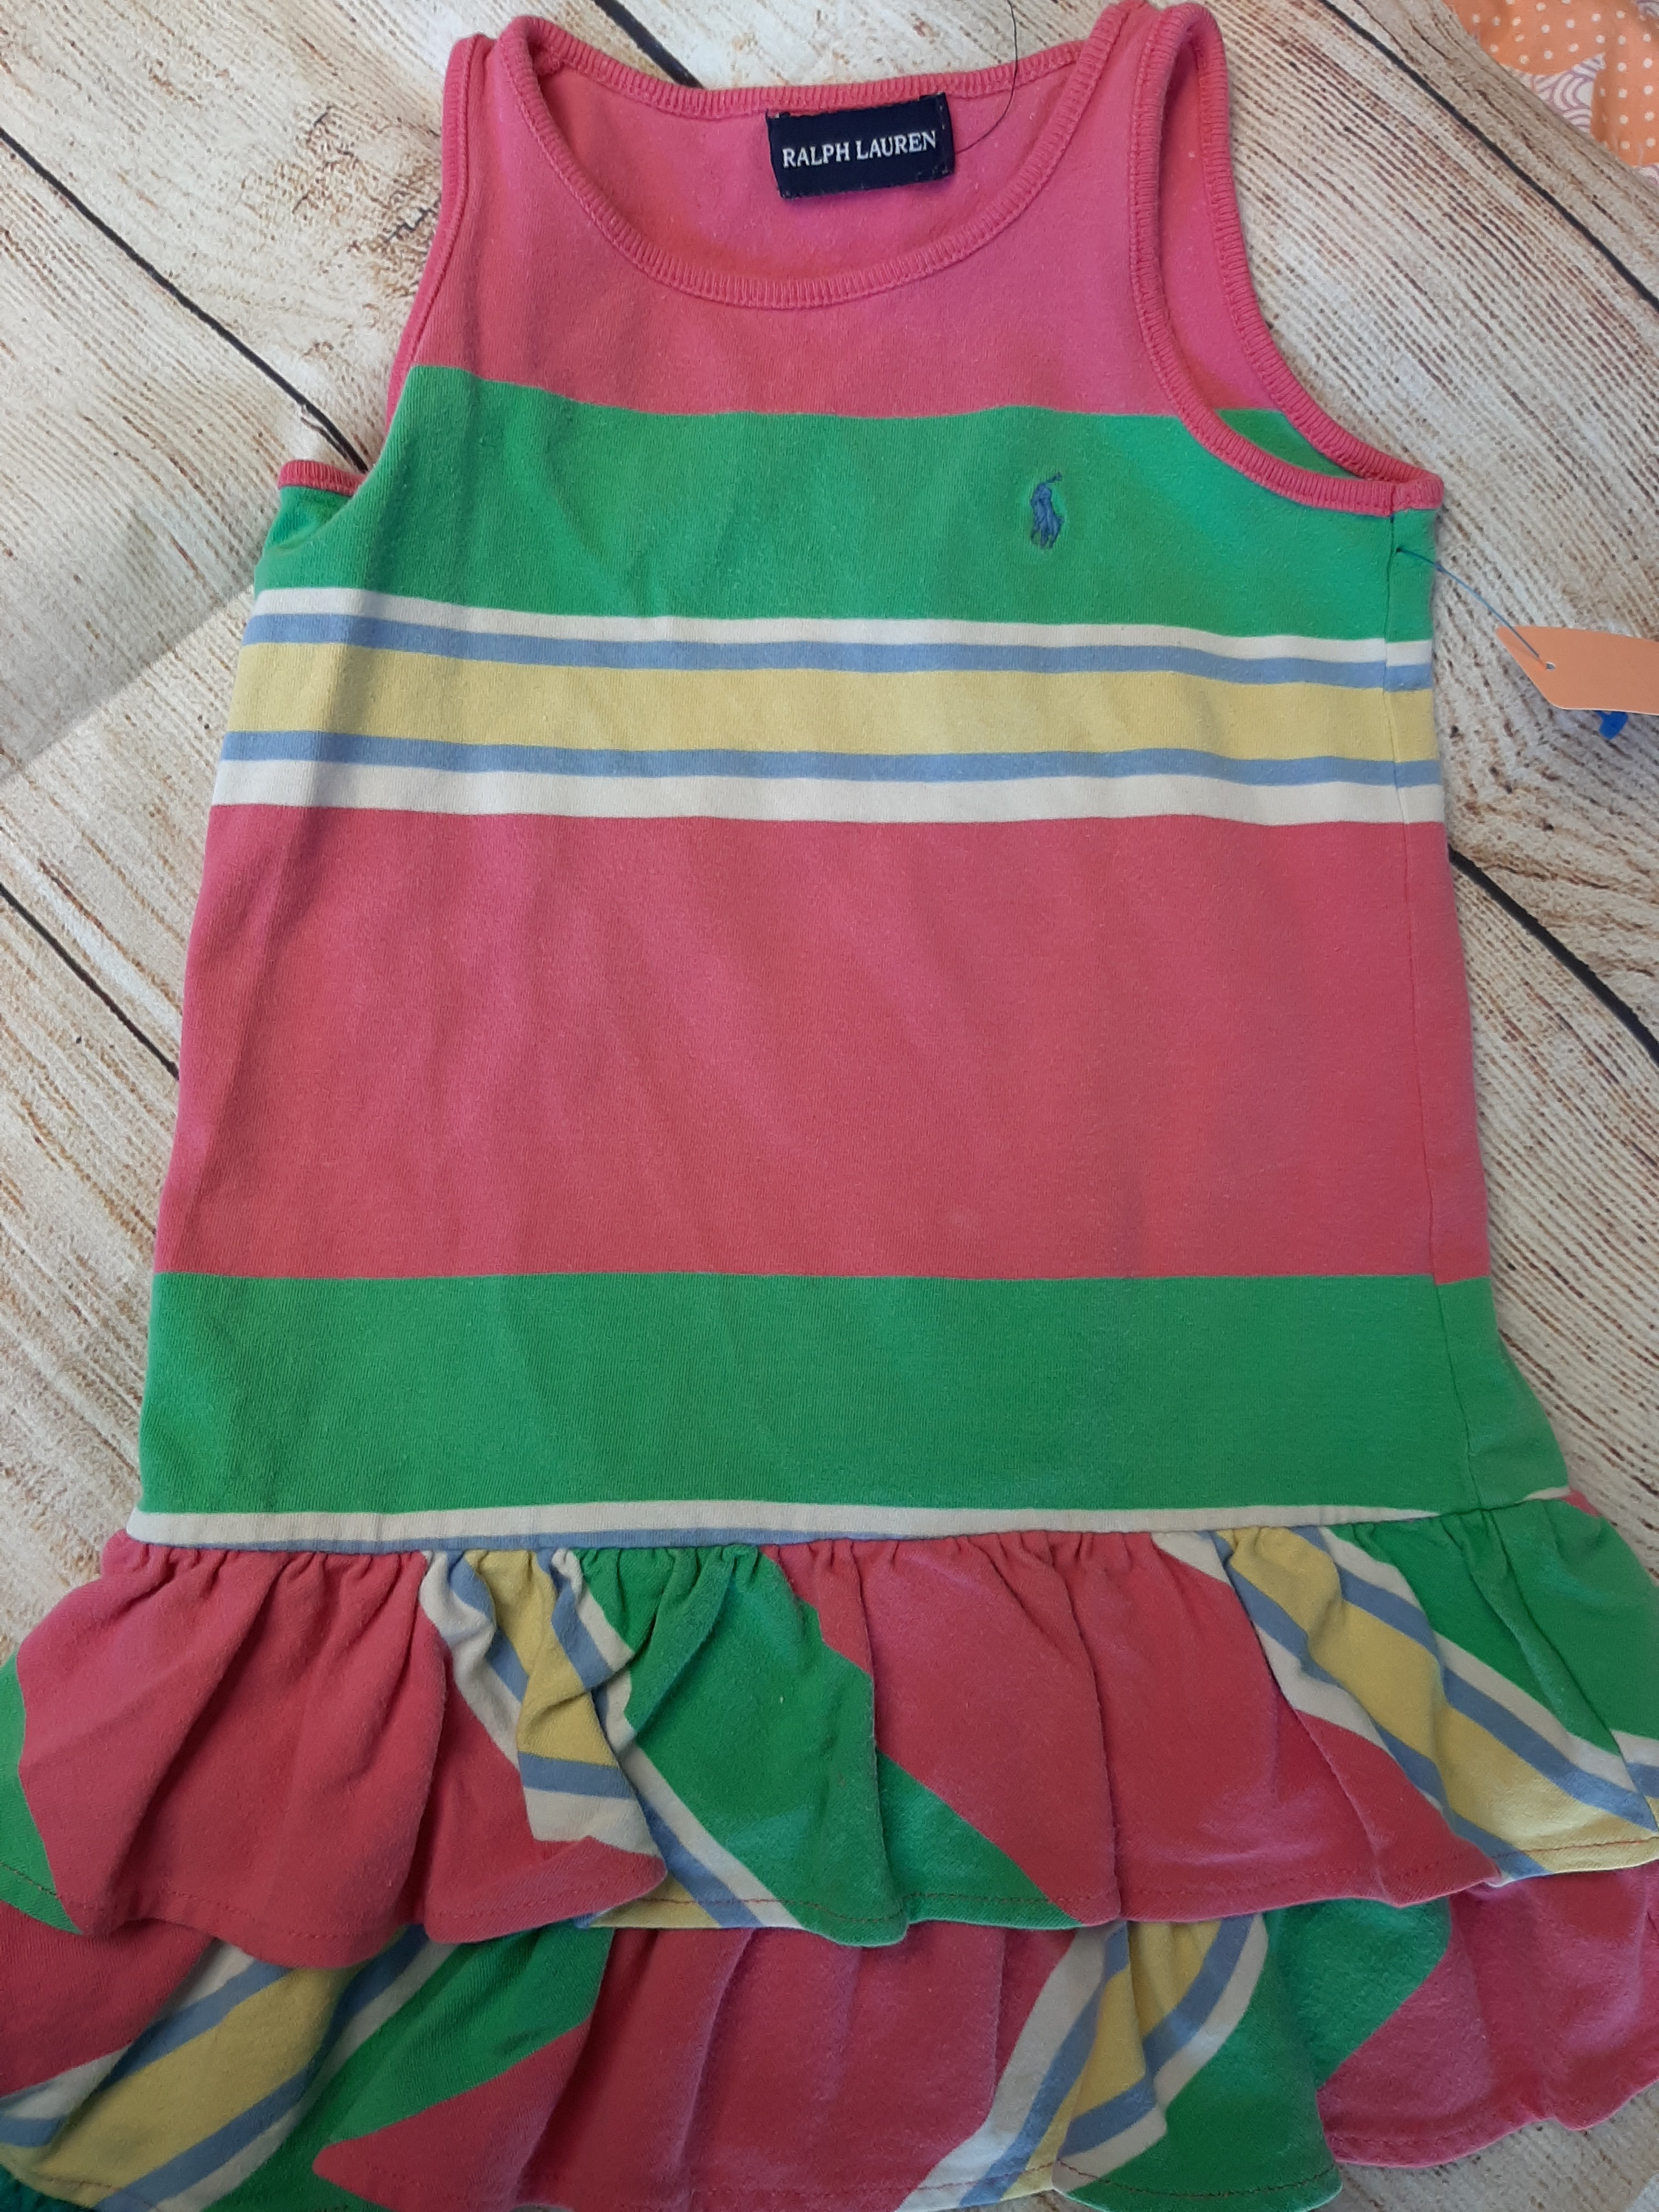 Ralph Lauren Polo Striped Dress sz 3T